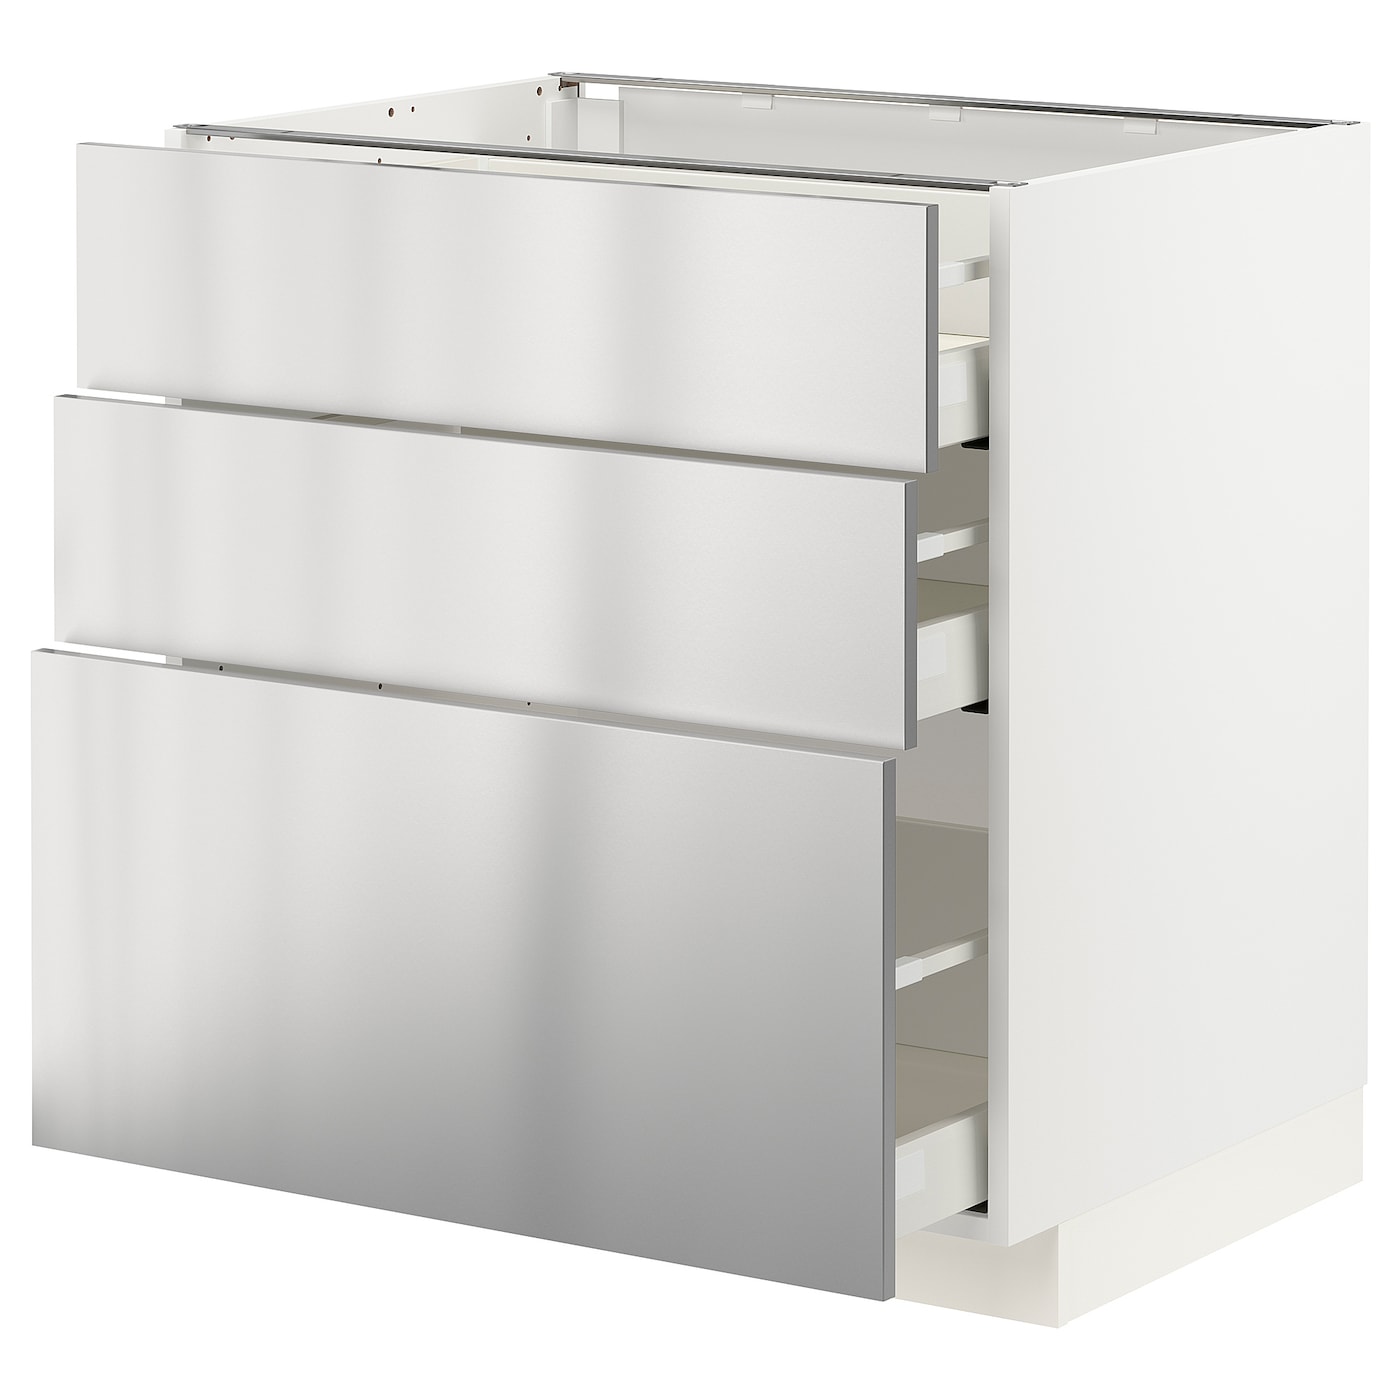 Напольный шкаф - IKEA METOD MAXIMERA, 88x62x80см, белый/светло-серый, МЕТОД МАКСИМЕРА ИКЕА